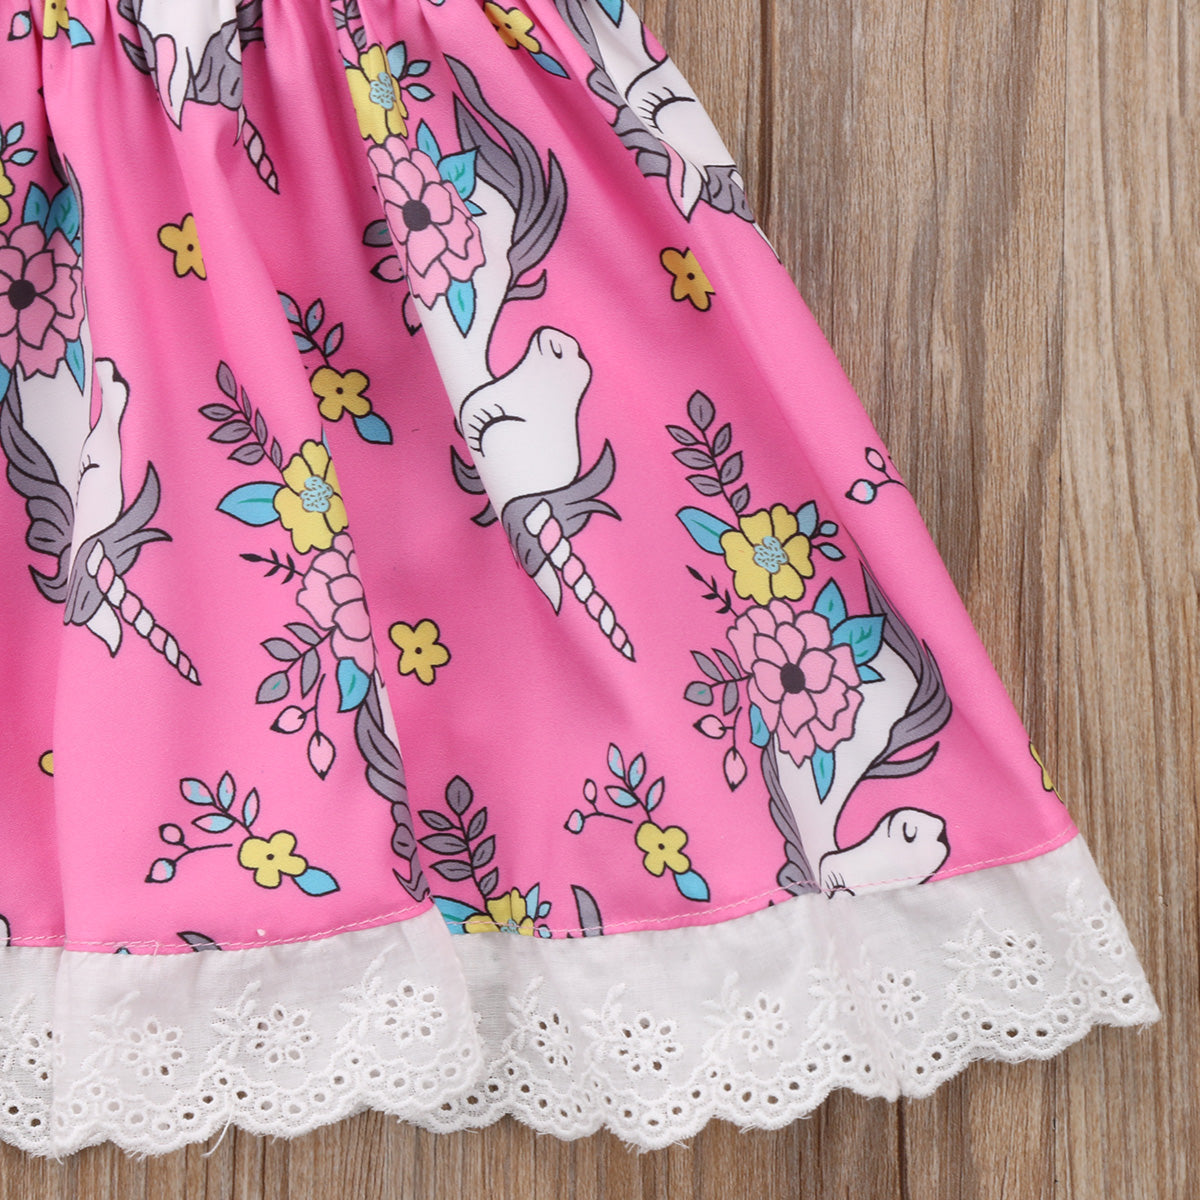 Baby Unicorn Dress Lace Skirt